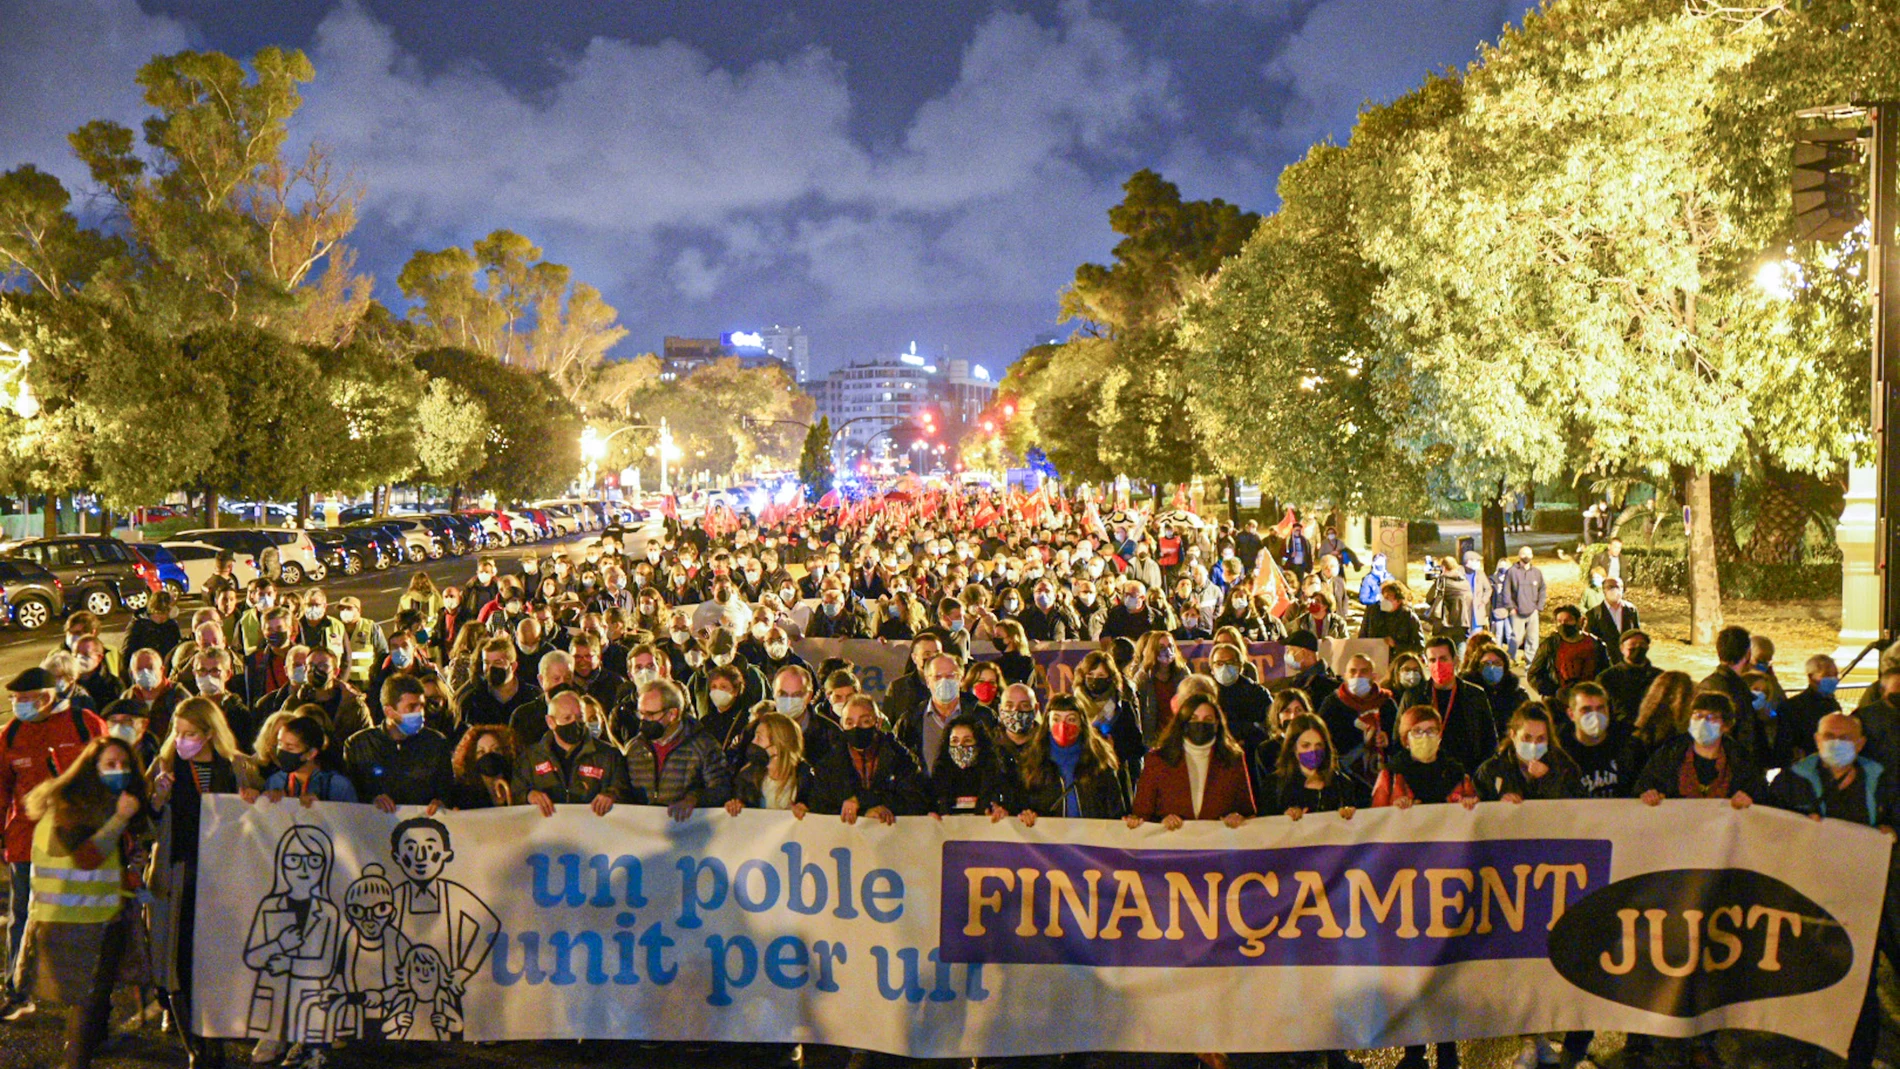 Varias personas sostienen una pancarta donde se lee "Un pueblo unido por una financiación justa", durante una manifestación que parte de la Plaza Sant Agustí de Valencia